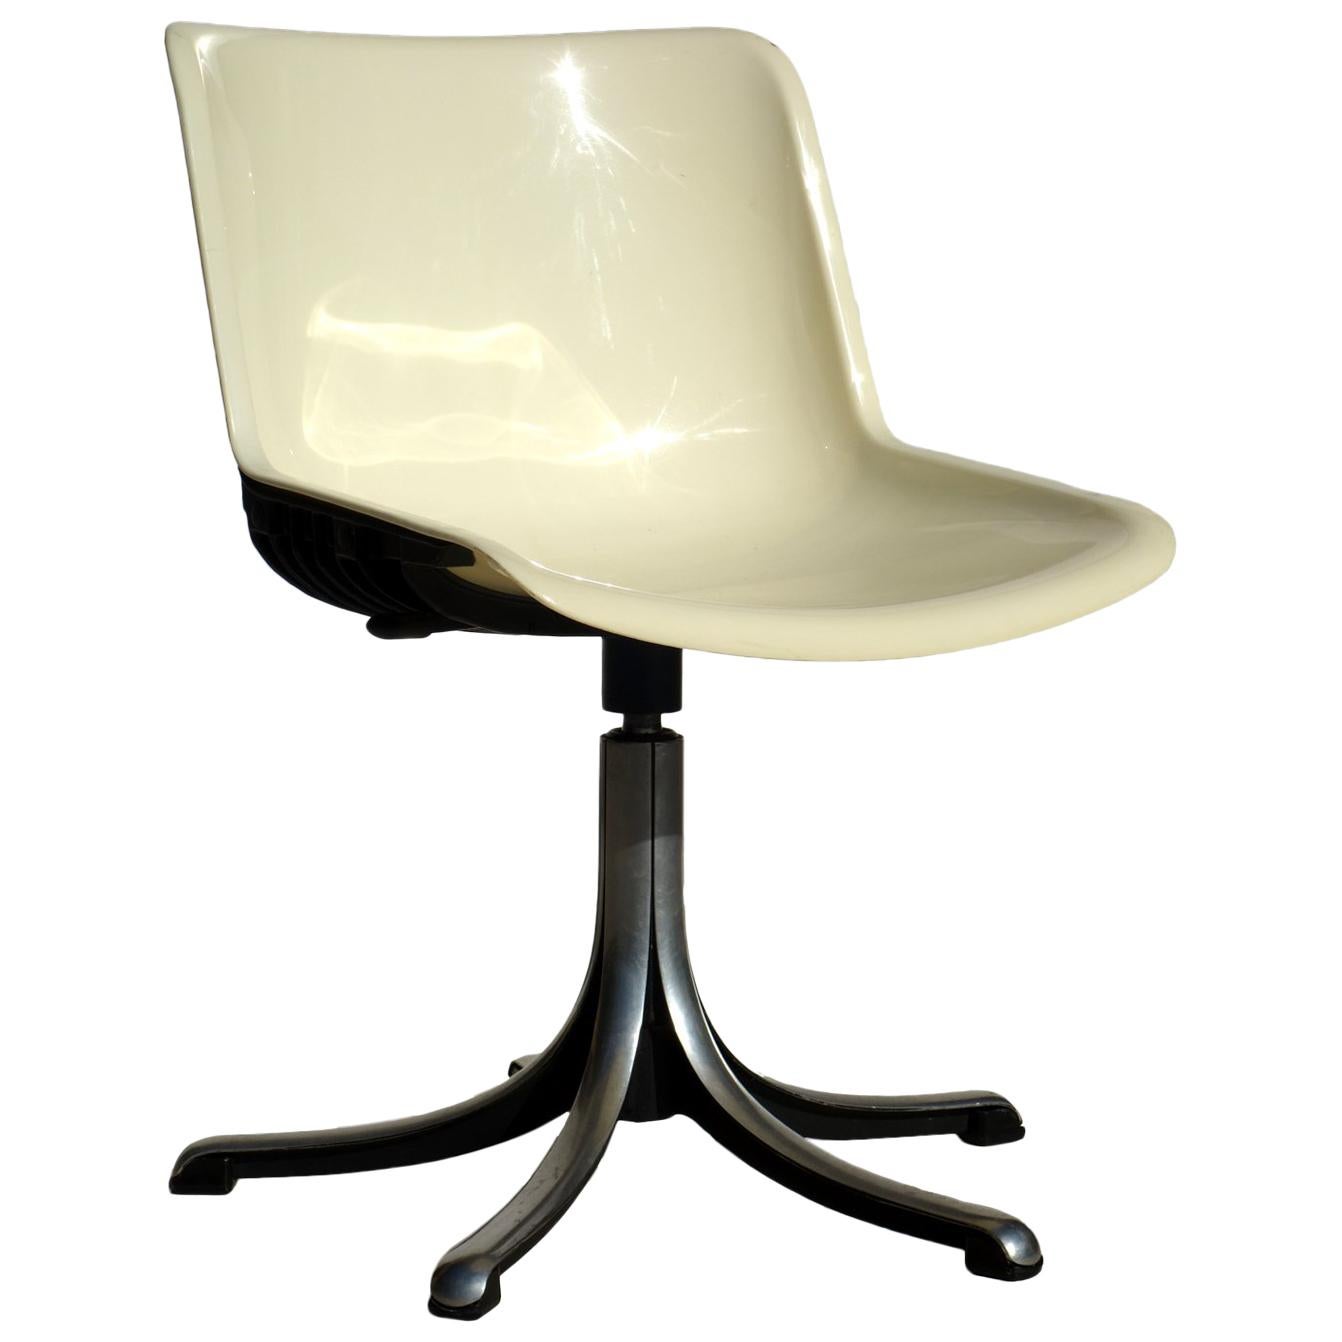 Modus Office by Osvaldo Borsani for Tecno 1960s Desk Chair